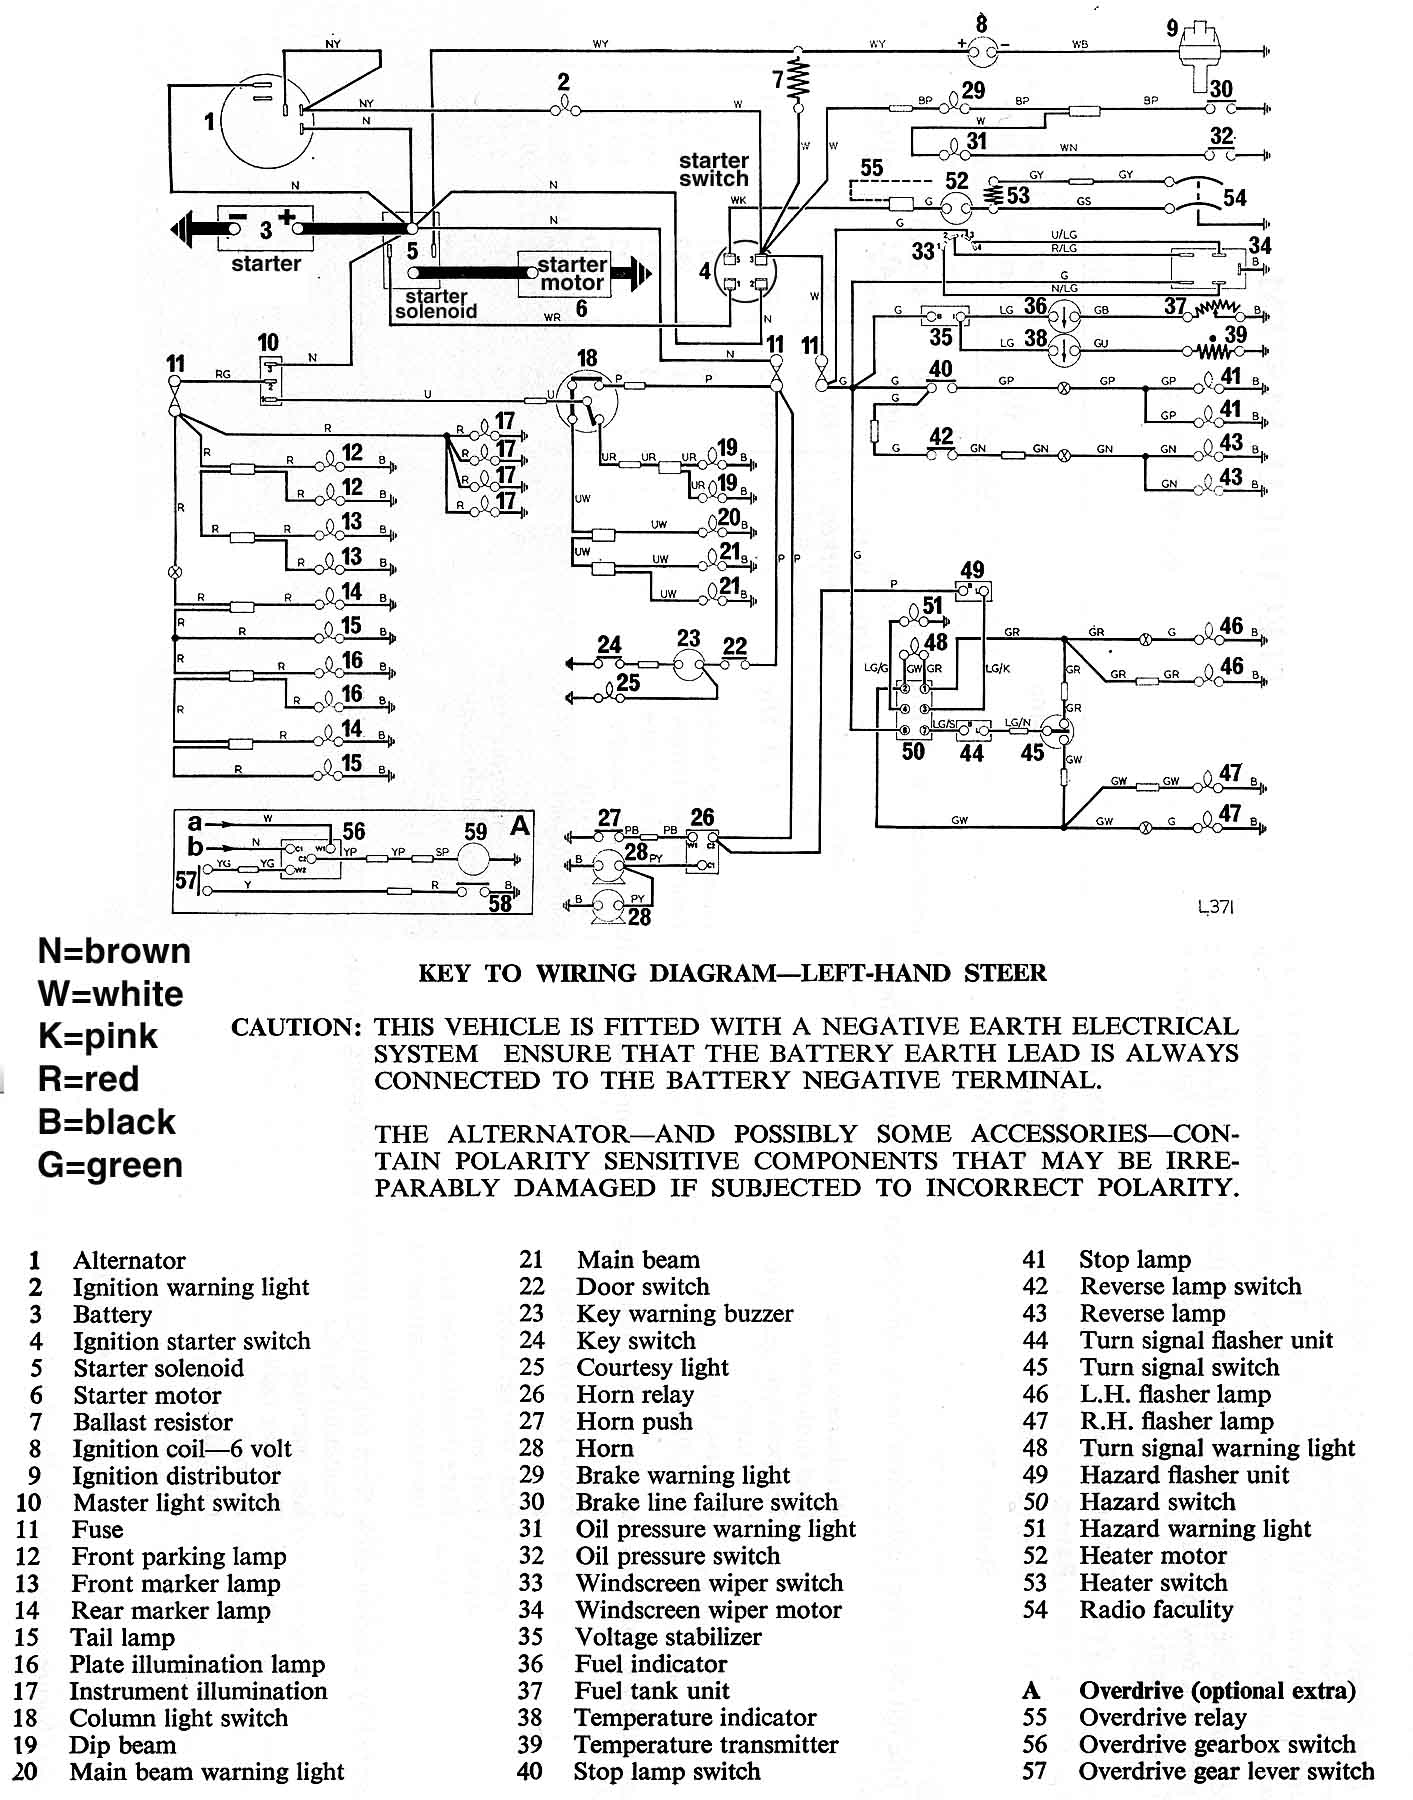 1979 spitfire wiring diagram